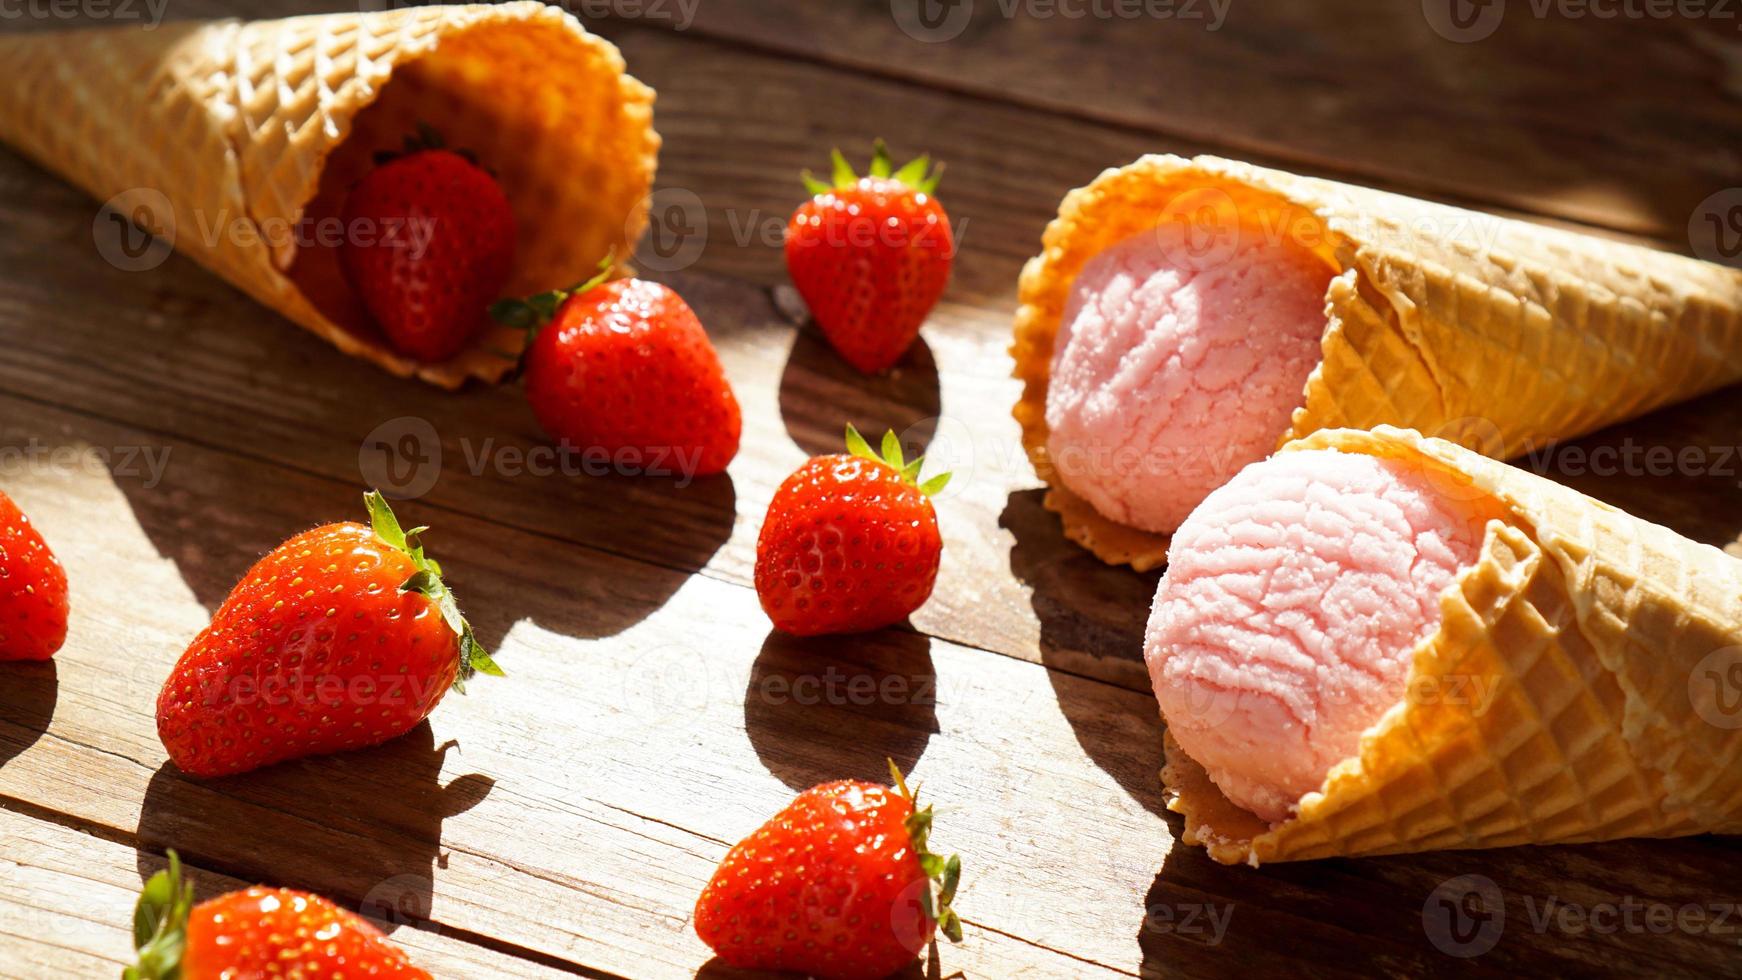 sorvete de morango em uma casquinha de waffle. frutas vermelhas e bolas de sorvete foto